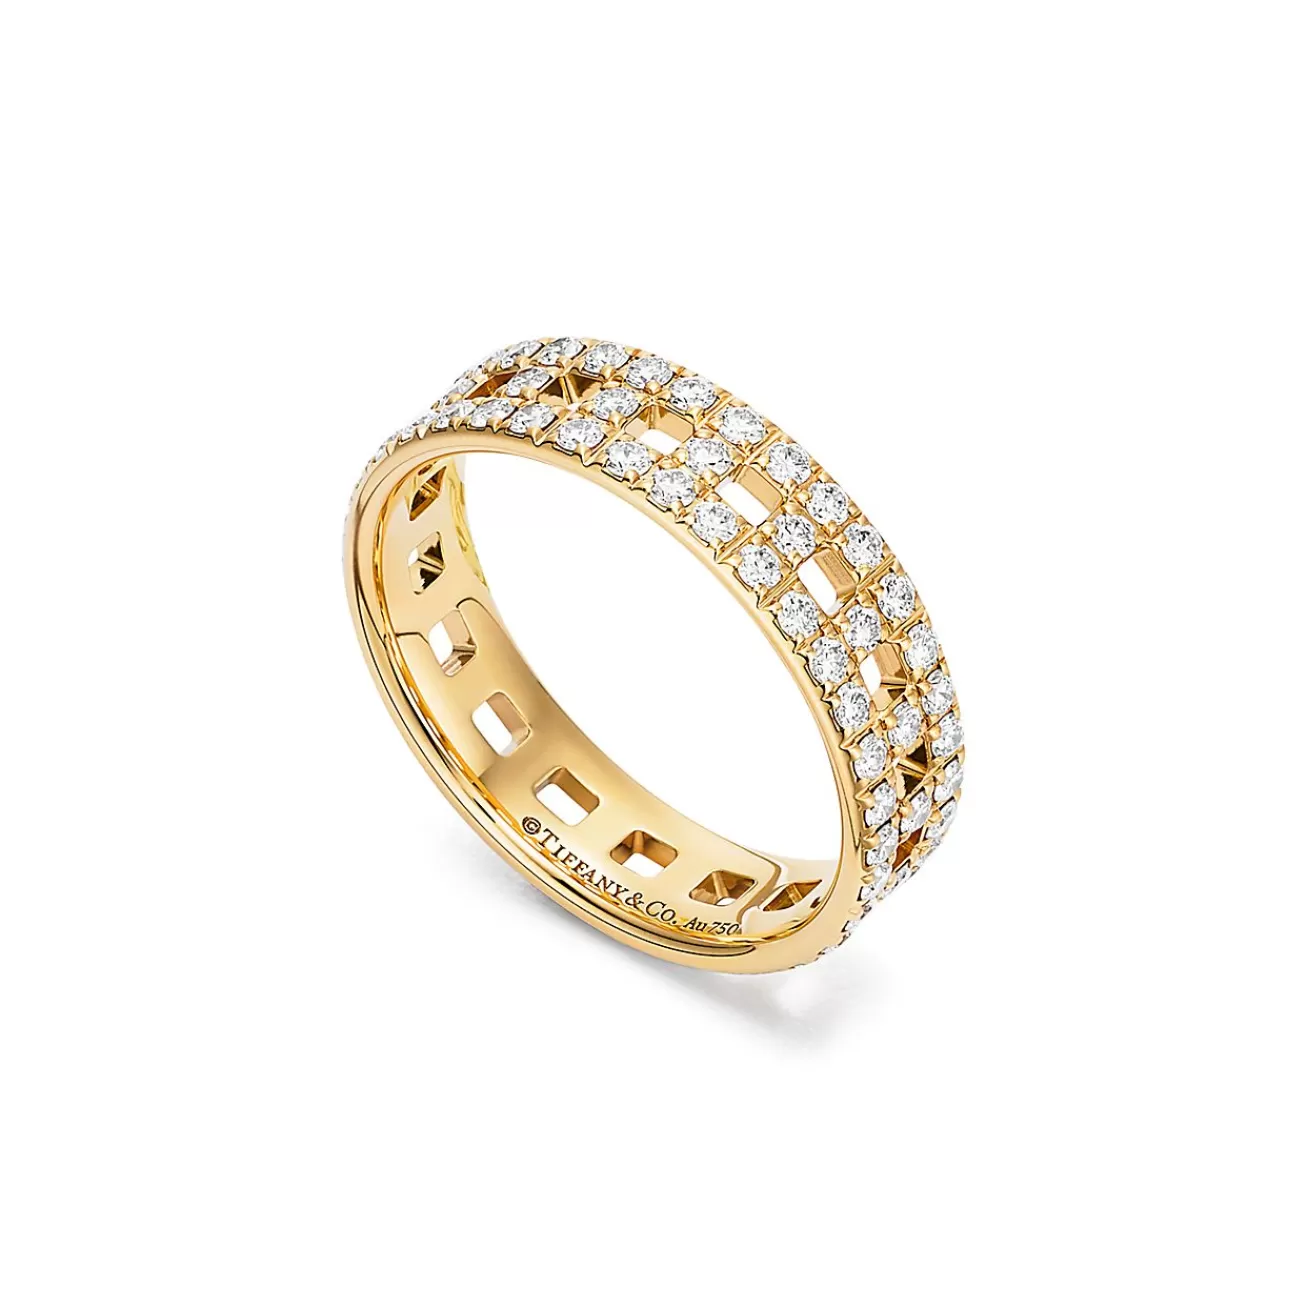 Tiffany & Co. Tiffany T True wide ring in 18k gold with pavé diamonds, 5.5 mm wide. | ^Women Rings | Men's Jewelry